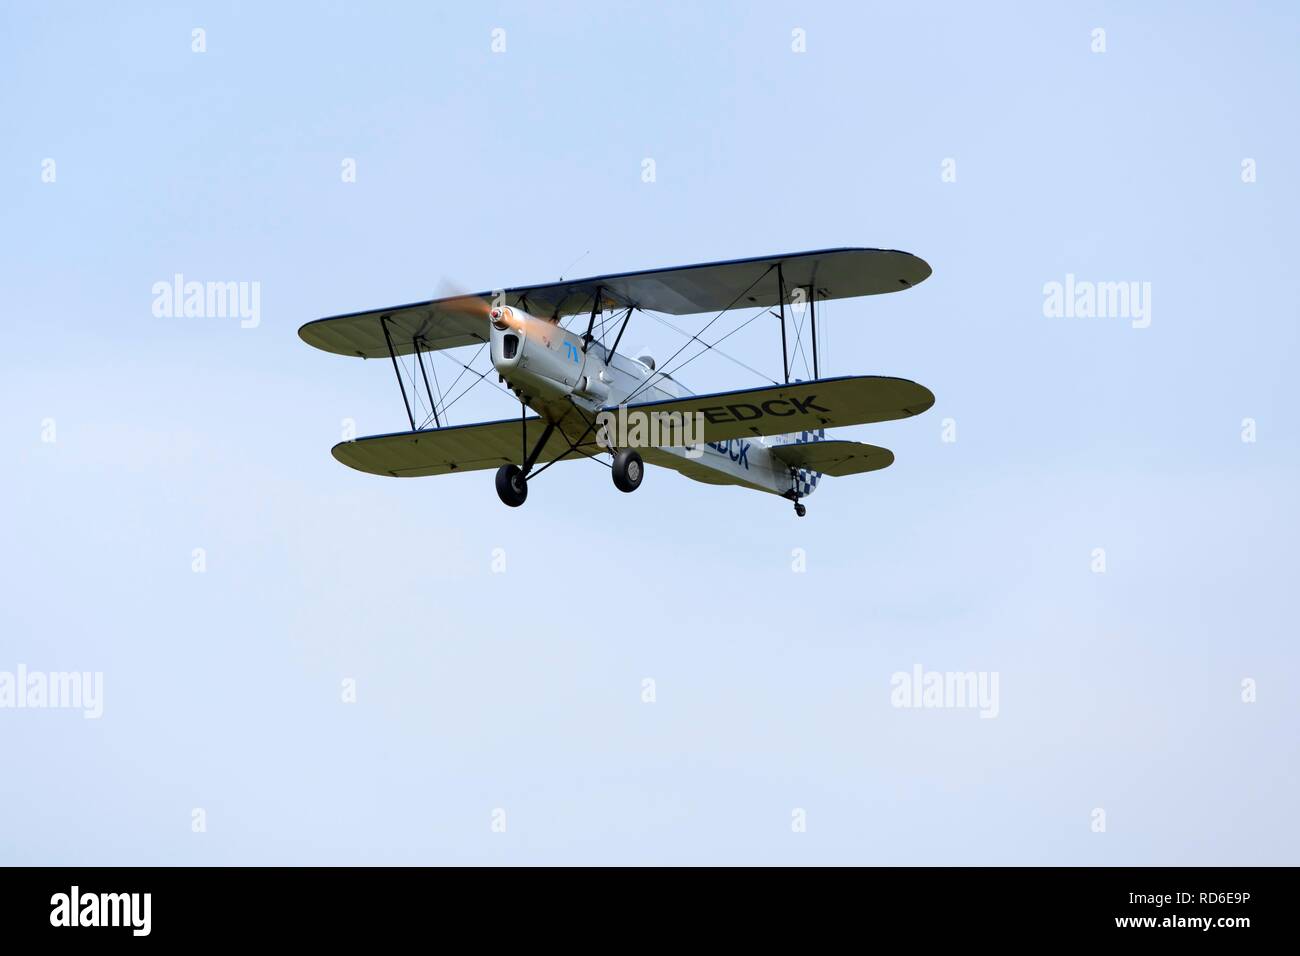 Doppeldecker auf dem Festival auf dem Flugplatz feiert 100 Jahre fliegen in Lüneburg, Niedersachsen, Deutschland Stockfoto